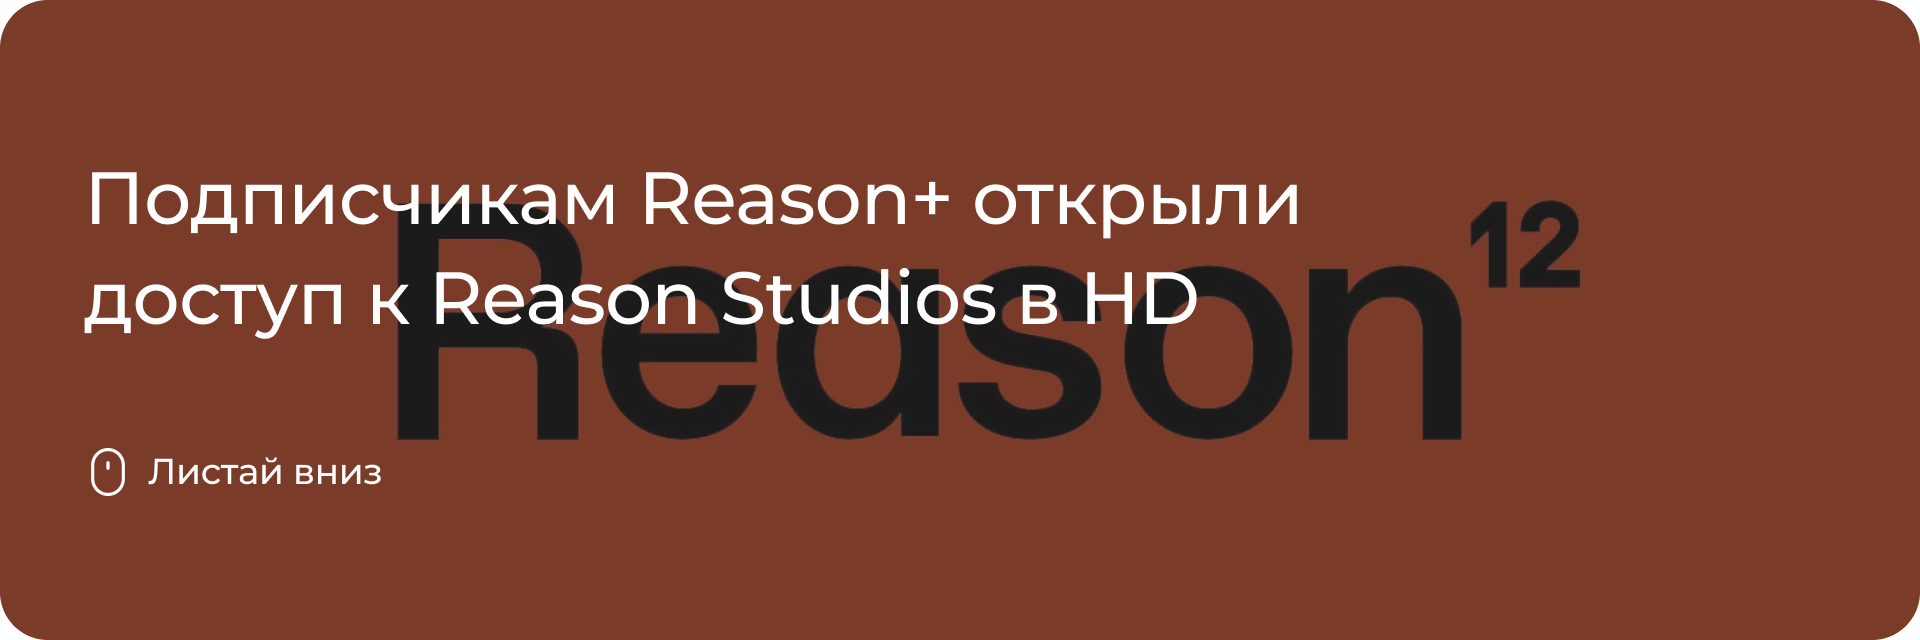 Доступ к Reason Studios в HD